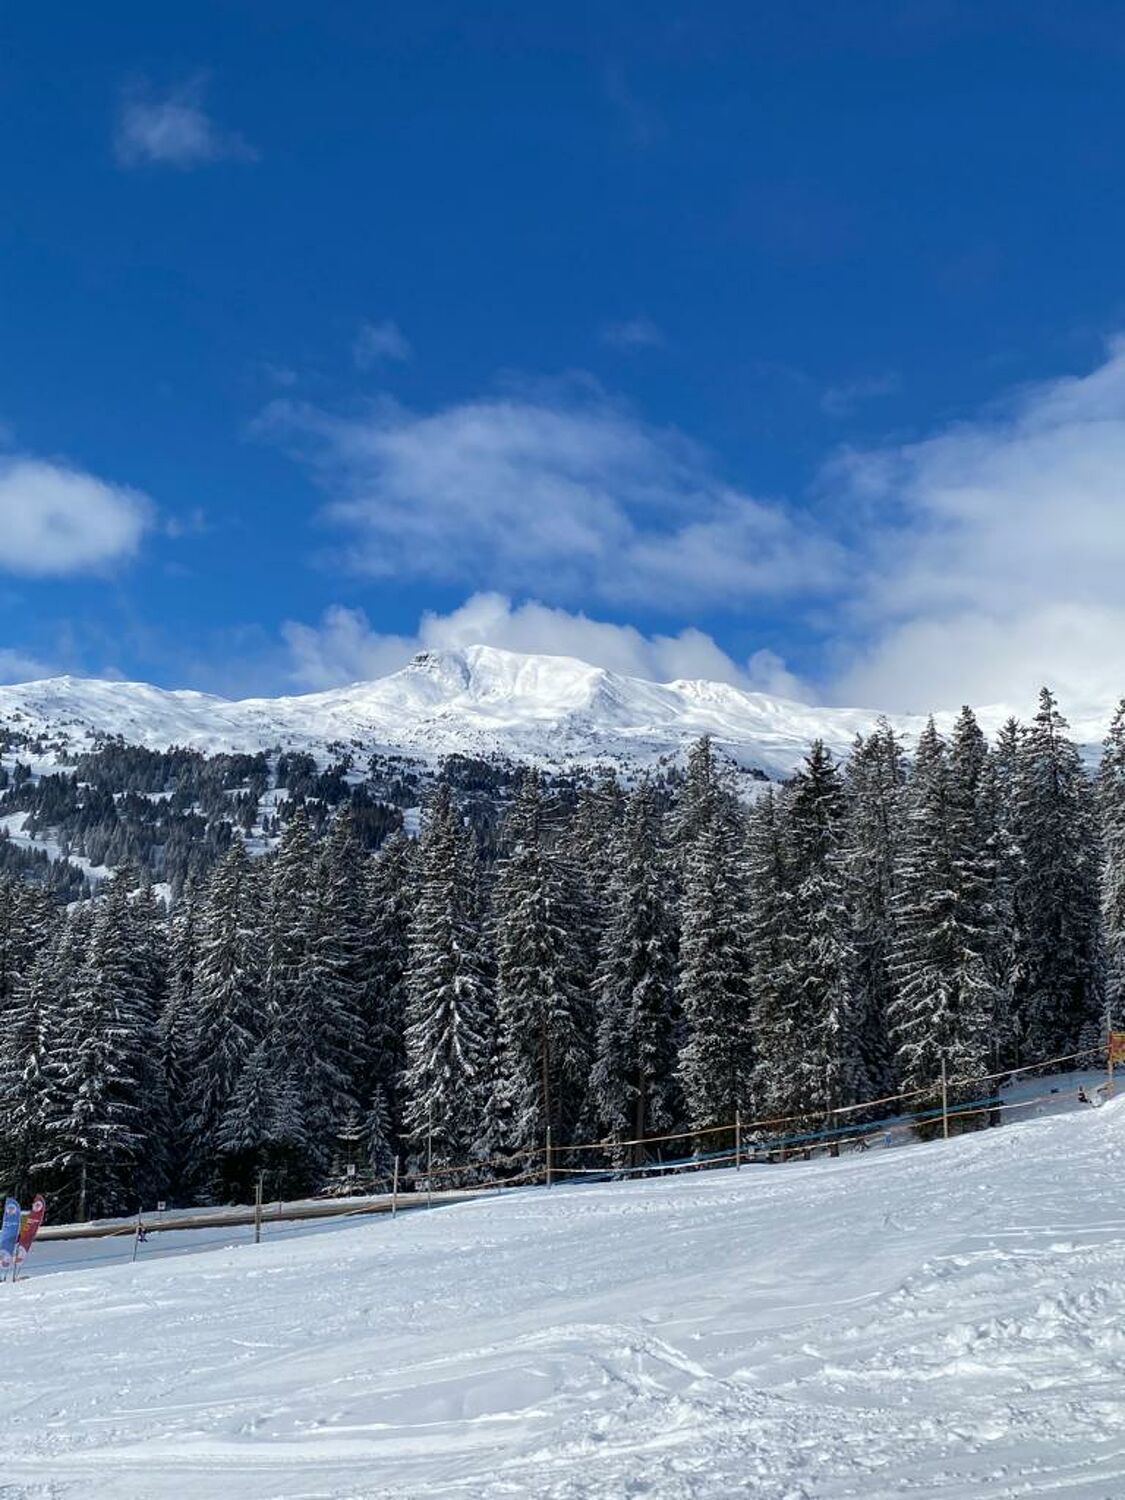 Bild mit Winter, Schnee, Ski, weiss, winterlandschaft, Alpen im Winter, Wandern, Winterwald, schweizeralpen